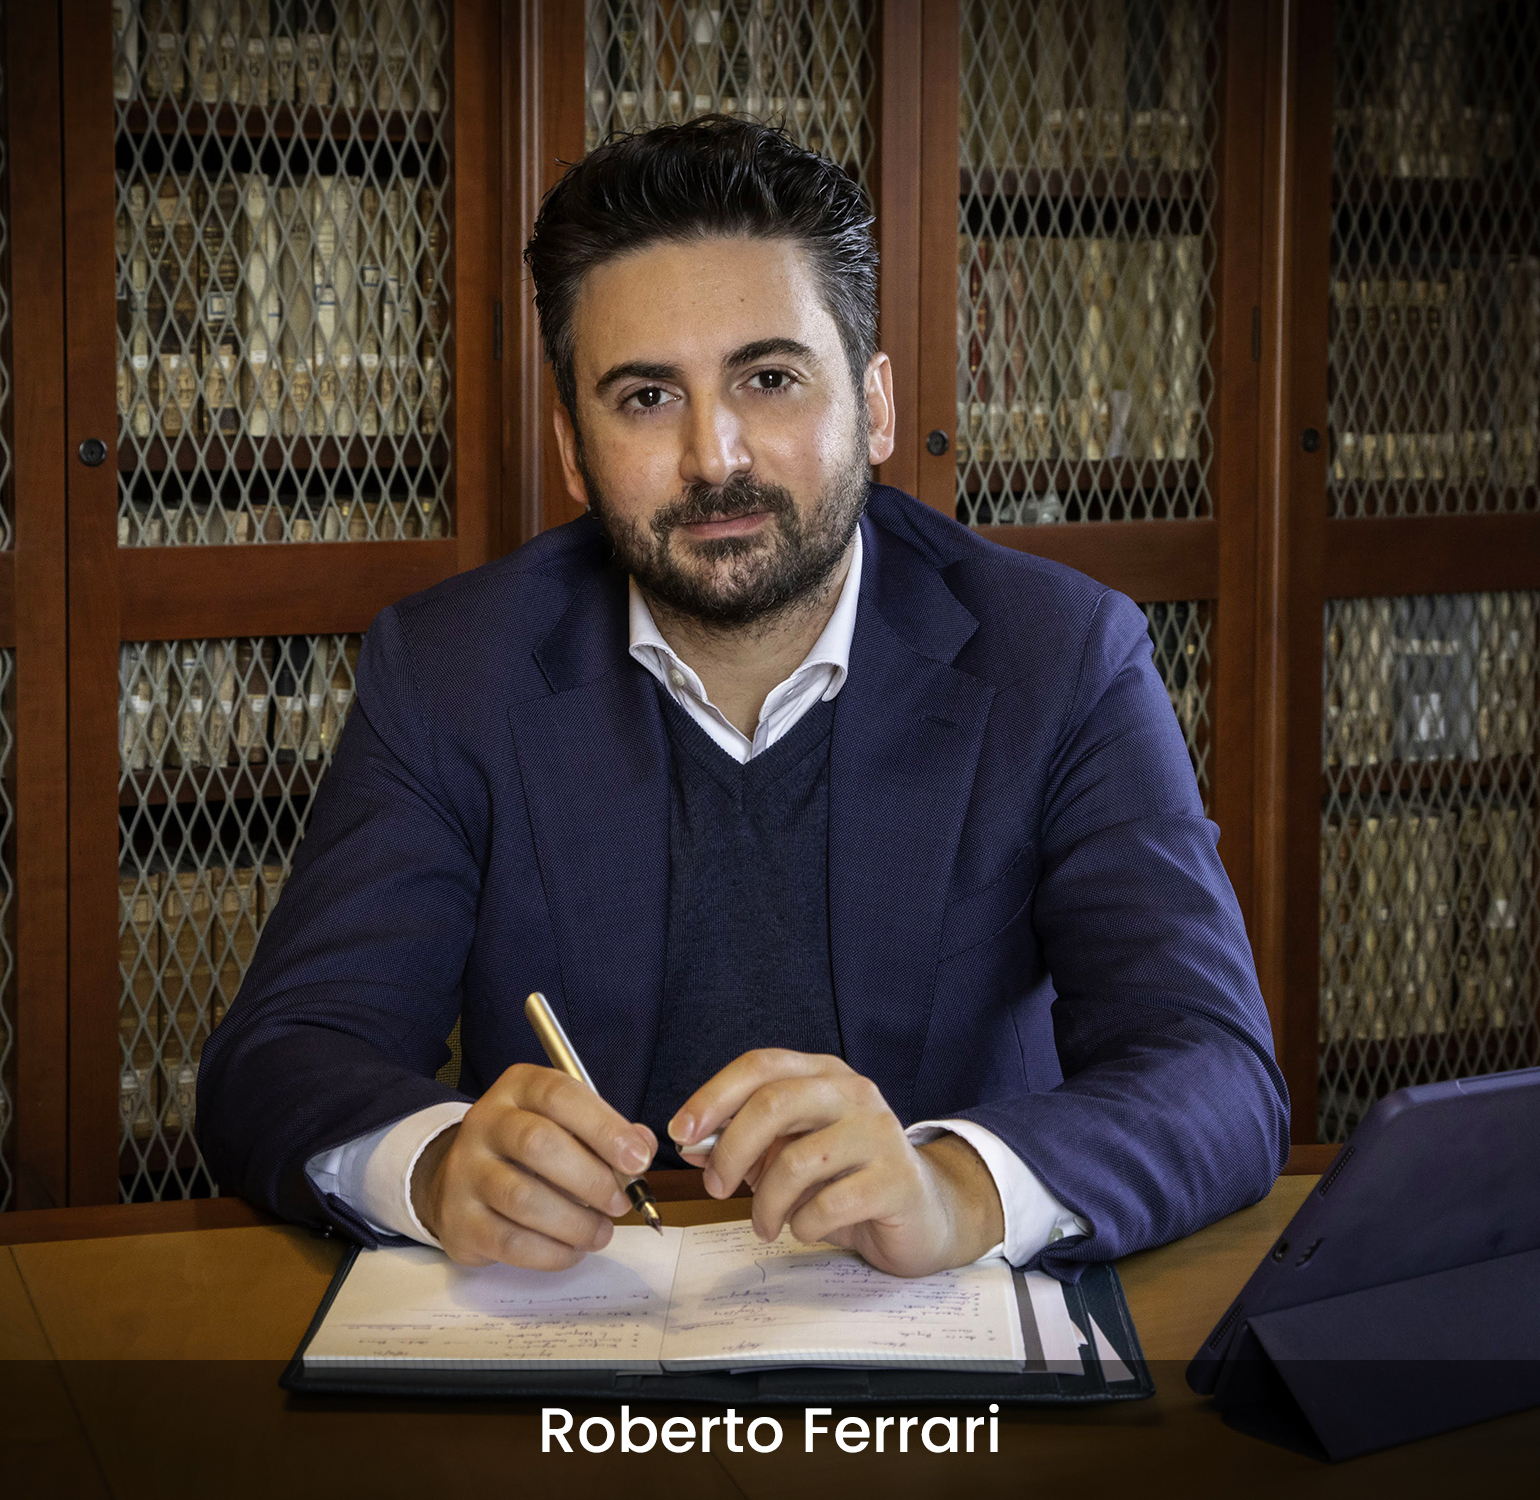 Roberto Ferrari, membro del comitato scientifico di Palazzo Bonocore